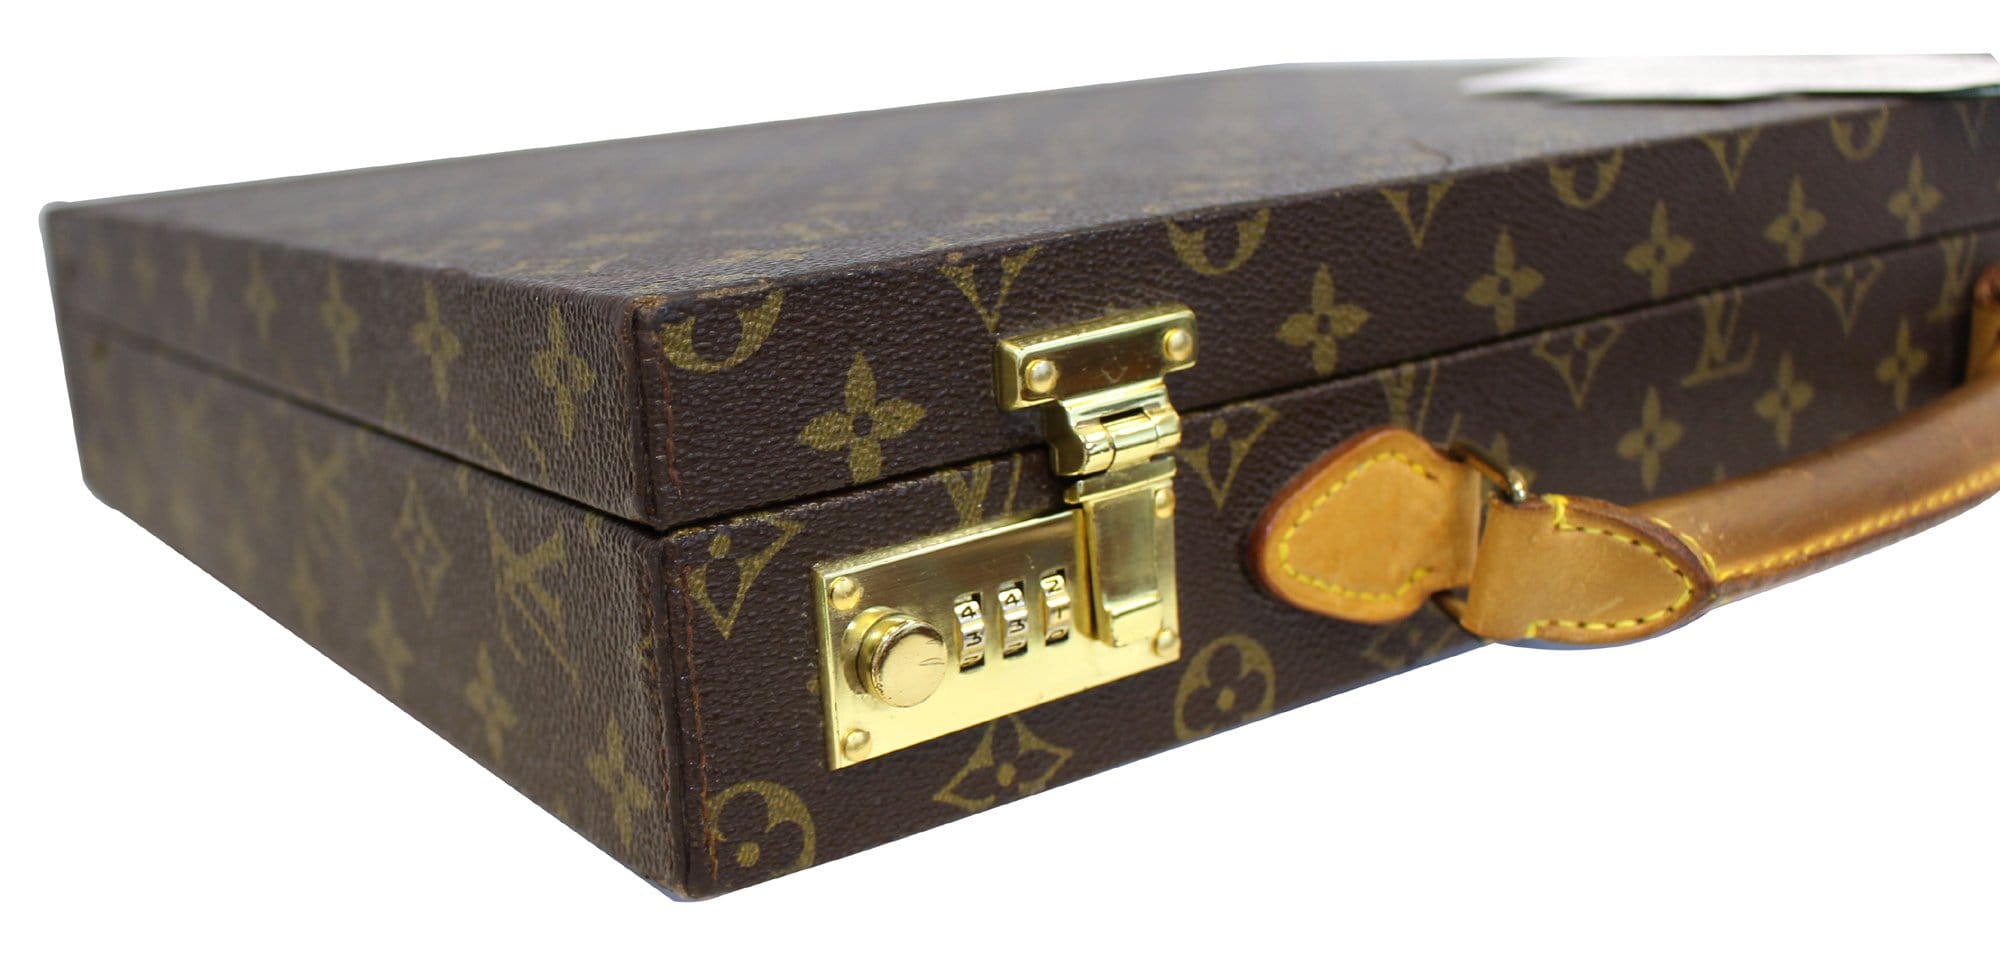 Louis Vuitton president briefcase 